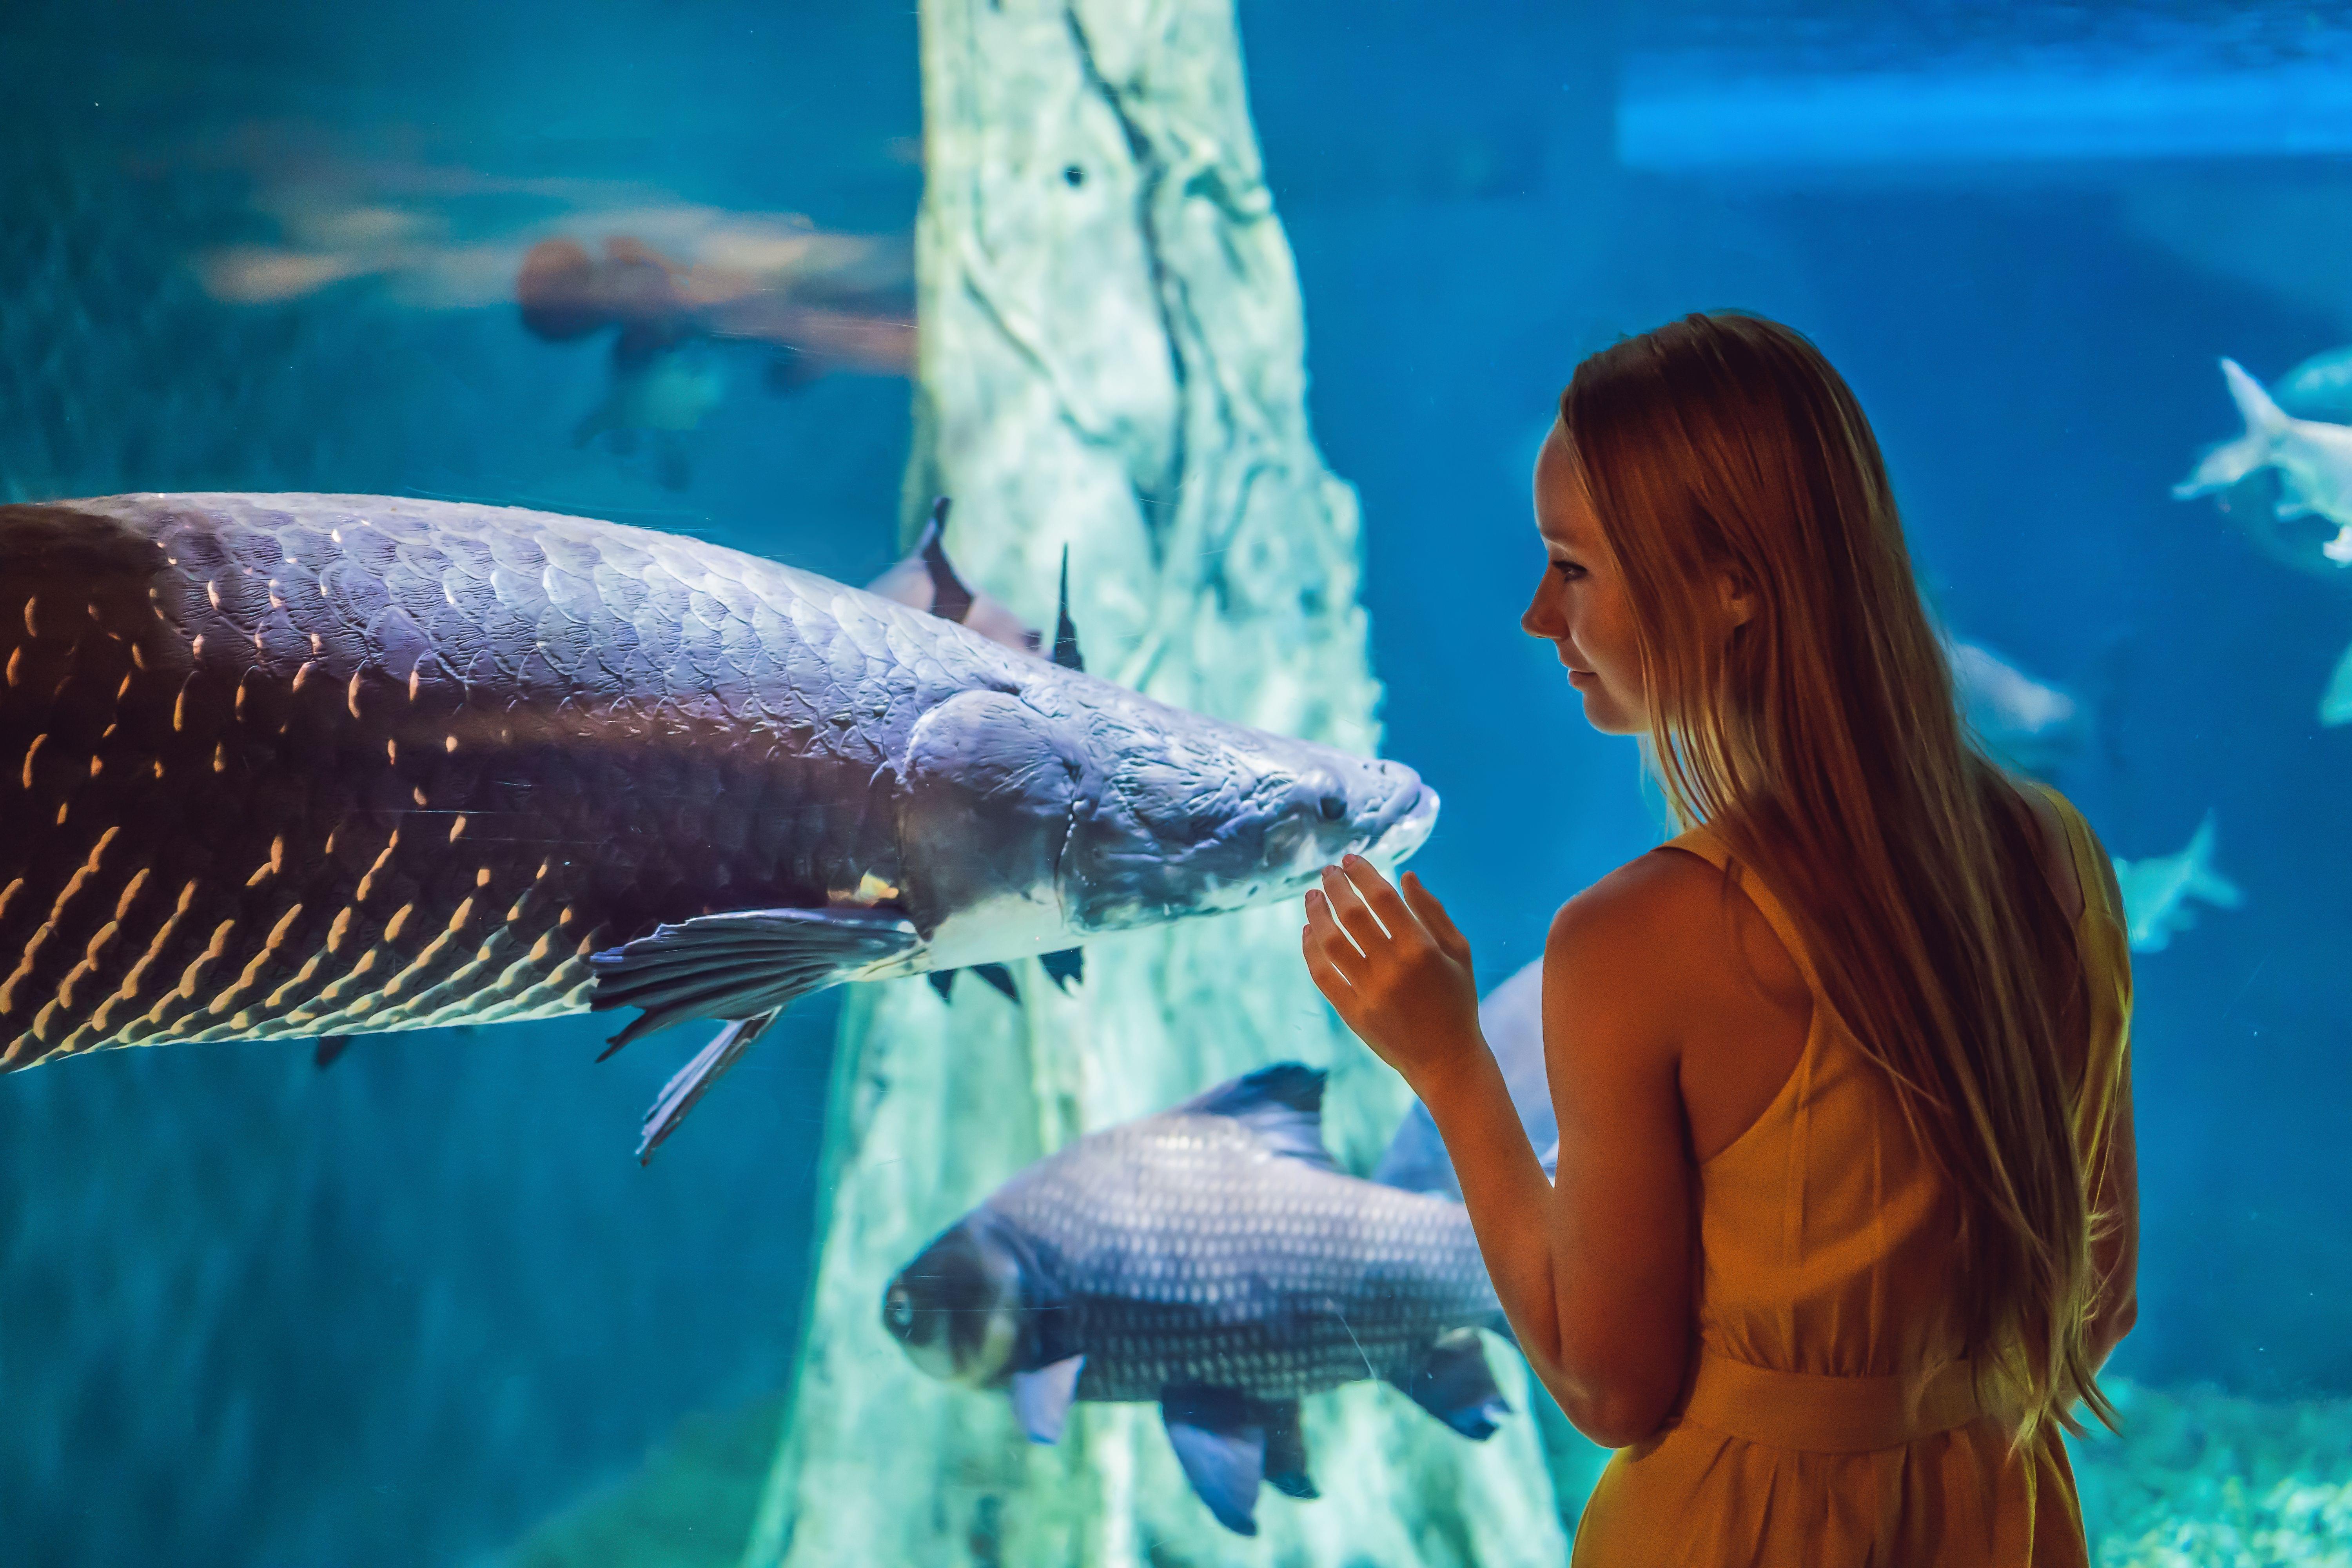 About Dubai Aquarium 